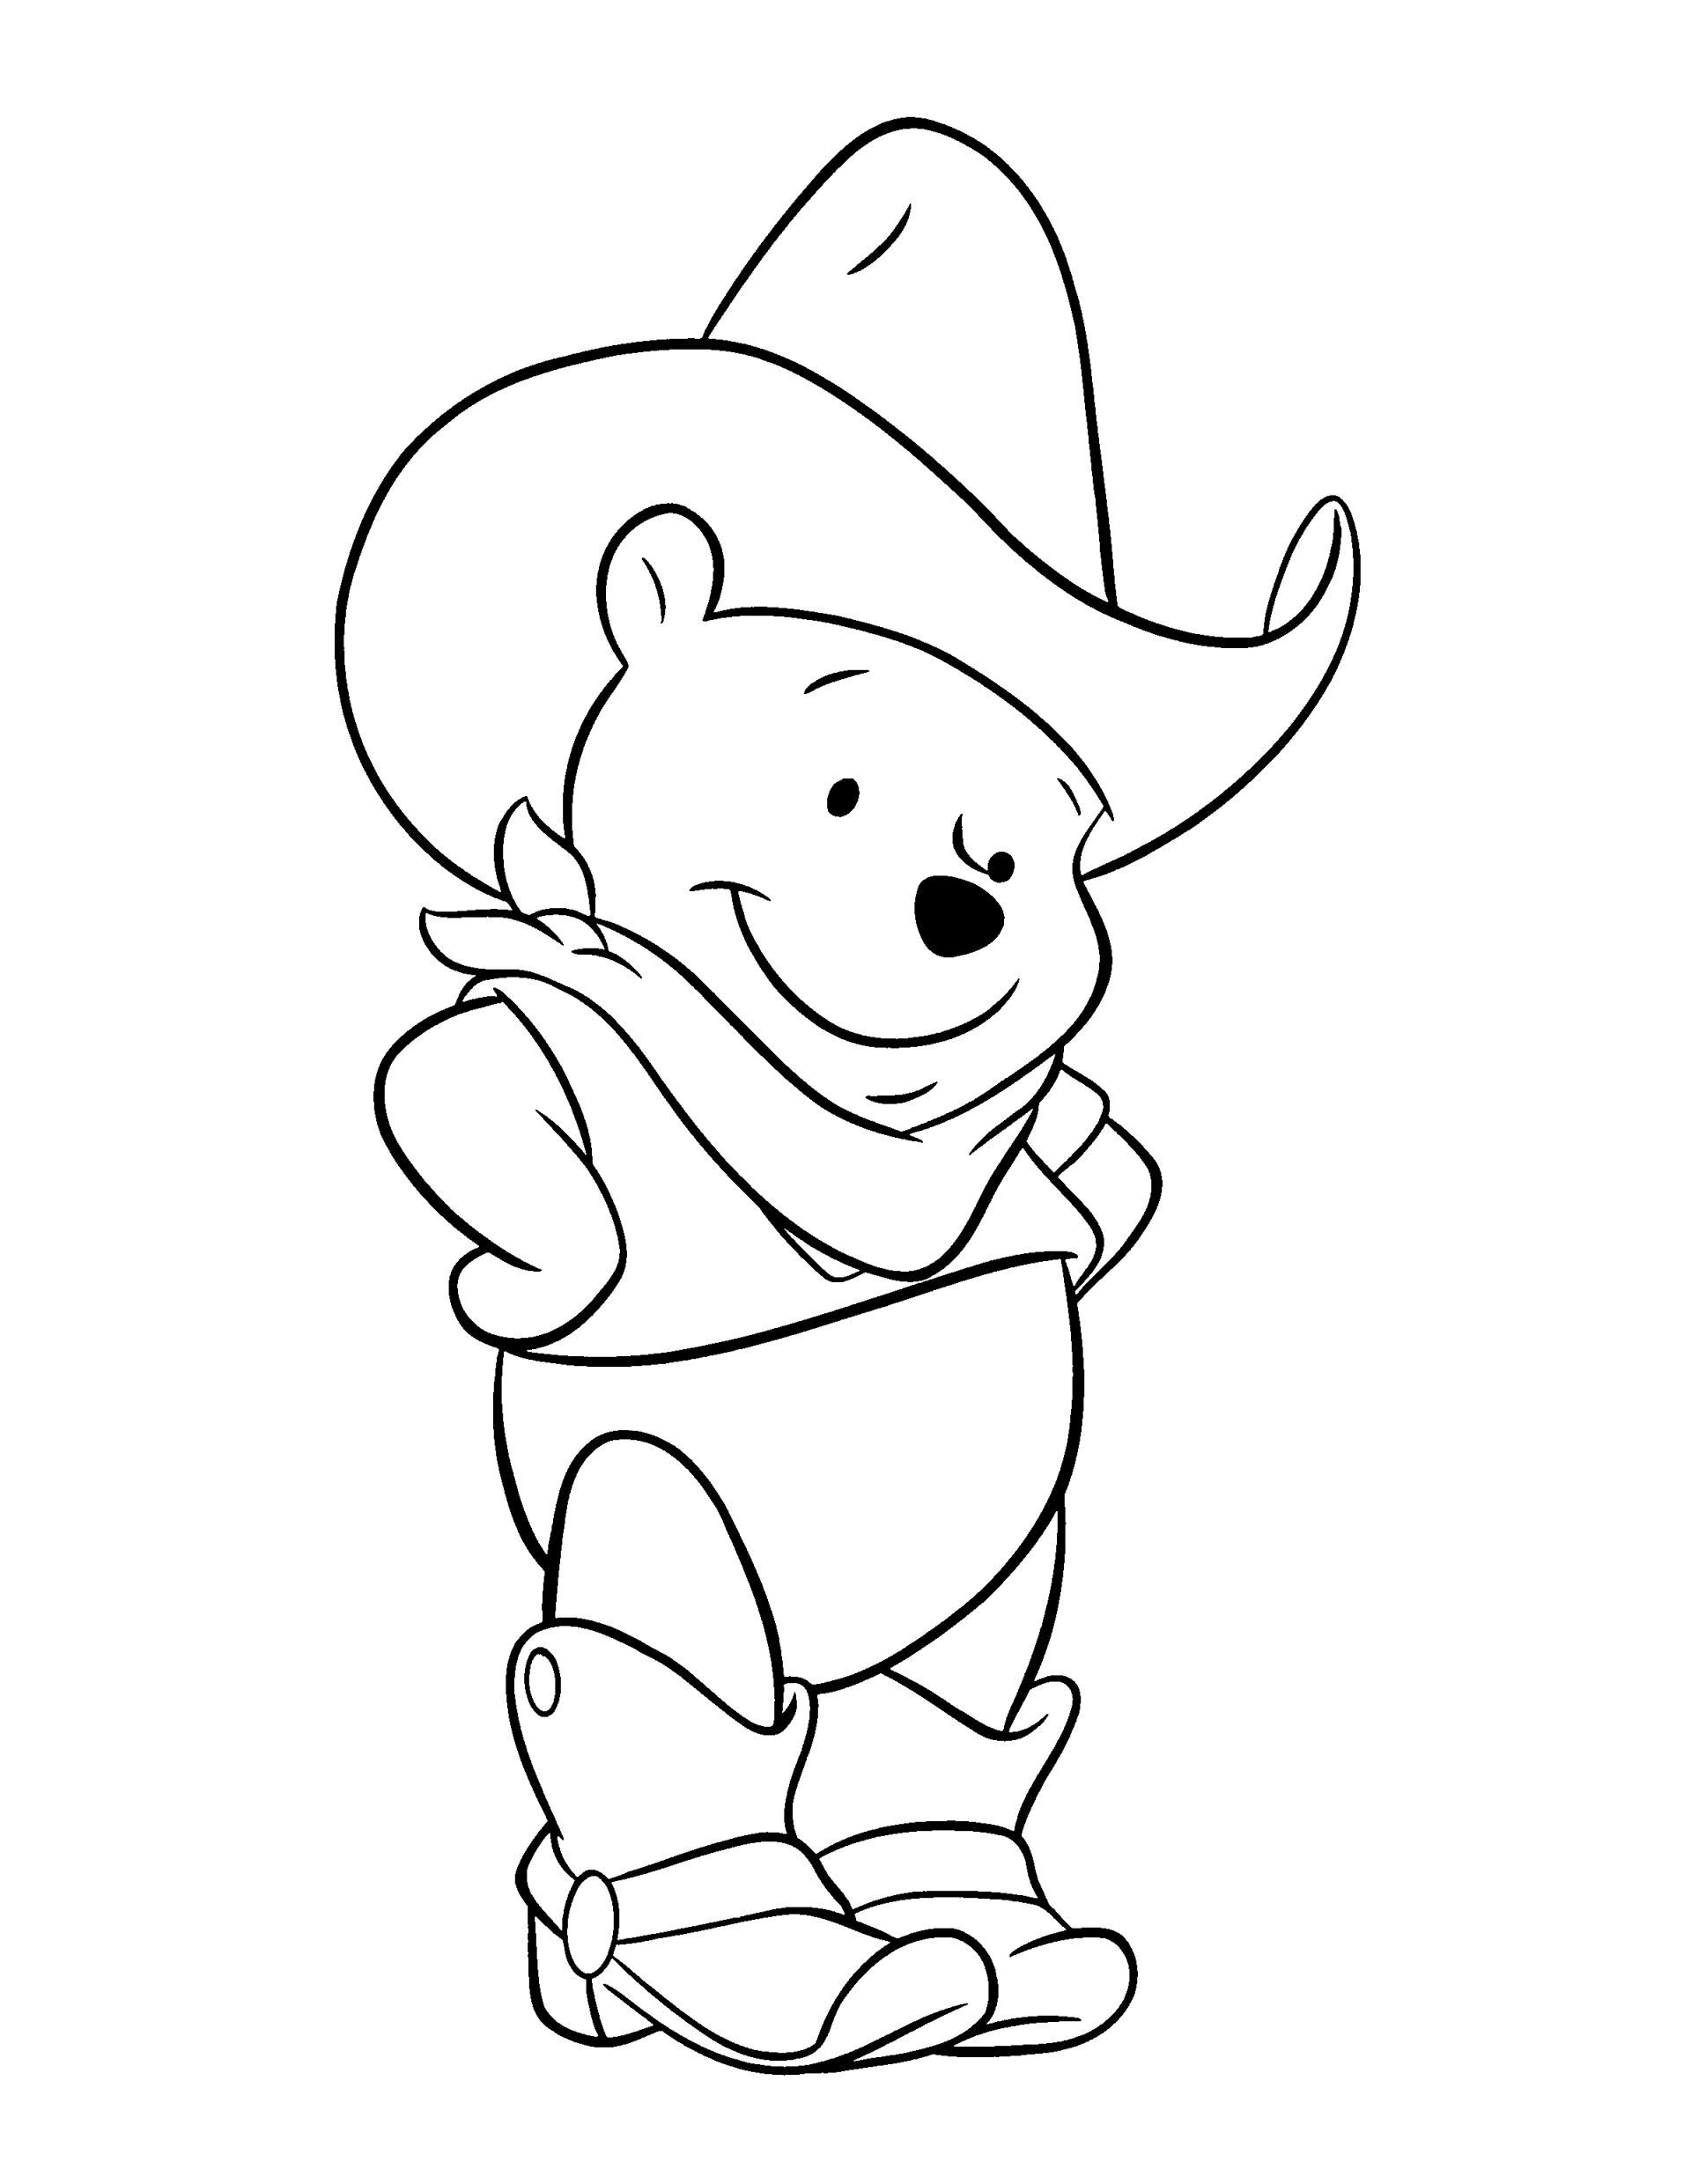 Раскраски из зарубежного мультфильма про Винни Пуха и его друзей для самых маленьких   Винни пух в ковбойской шляпе